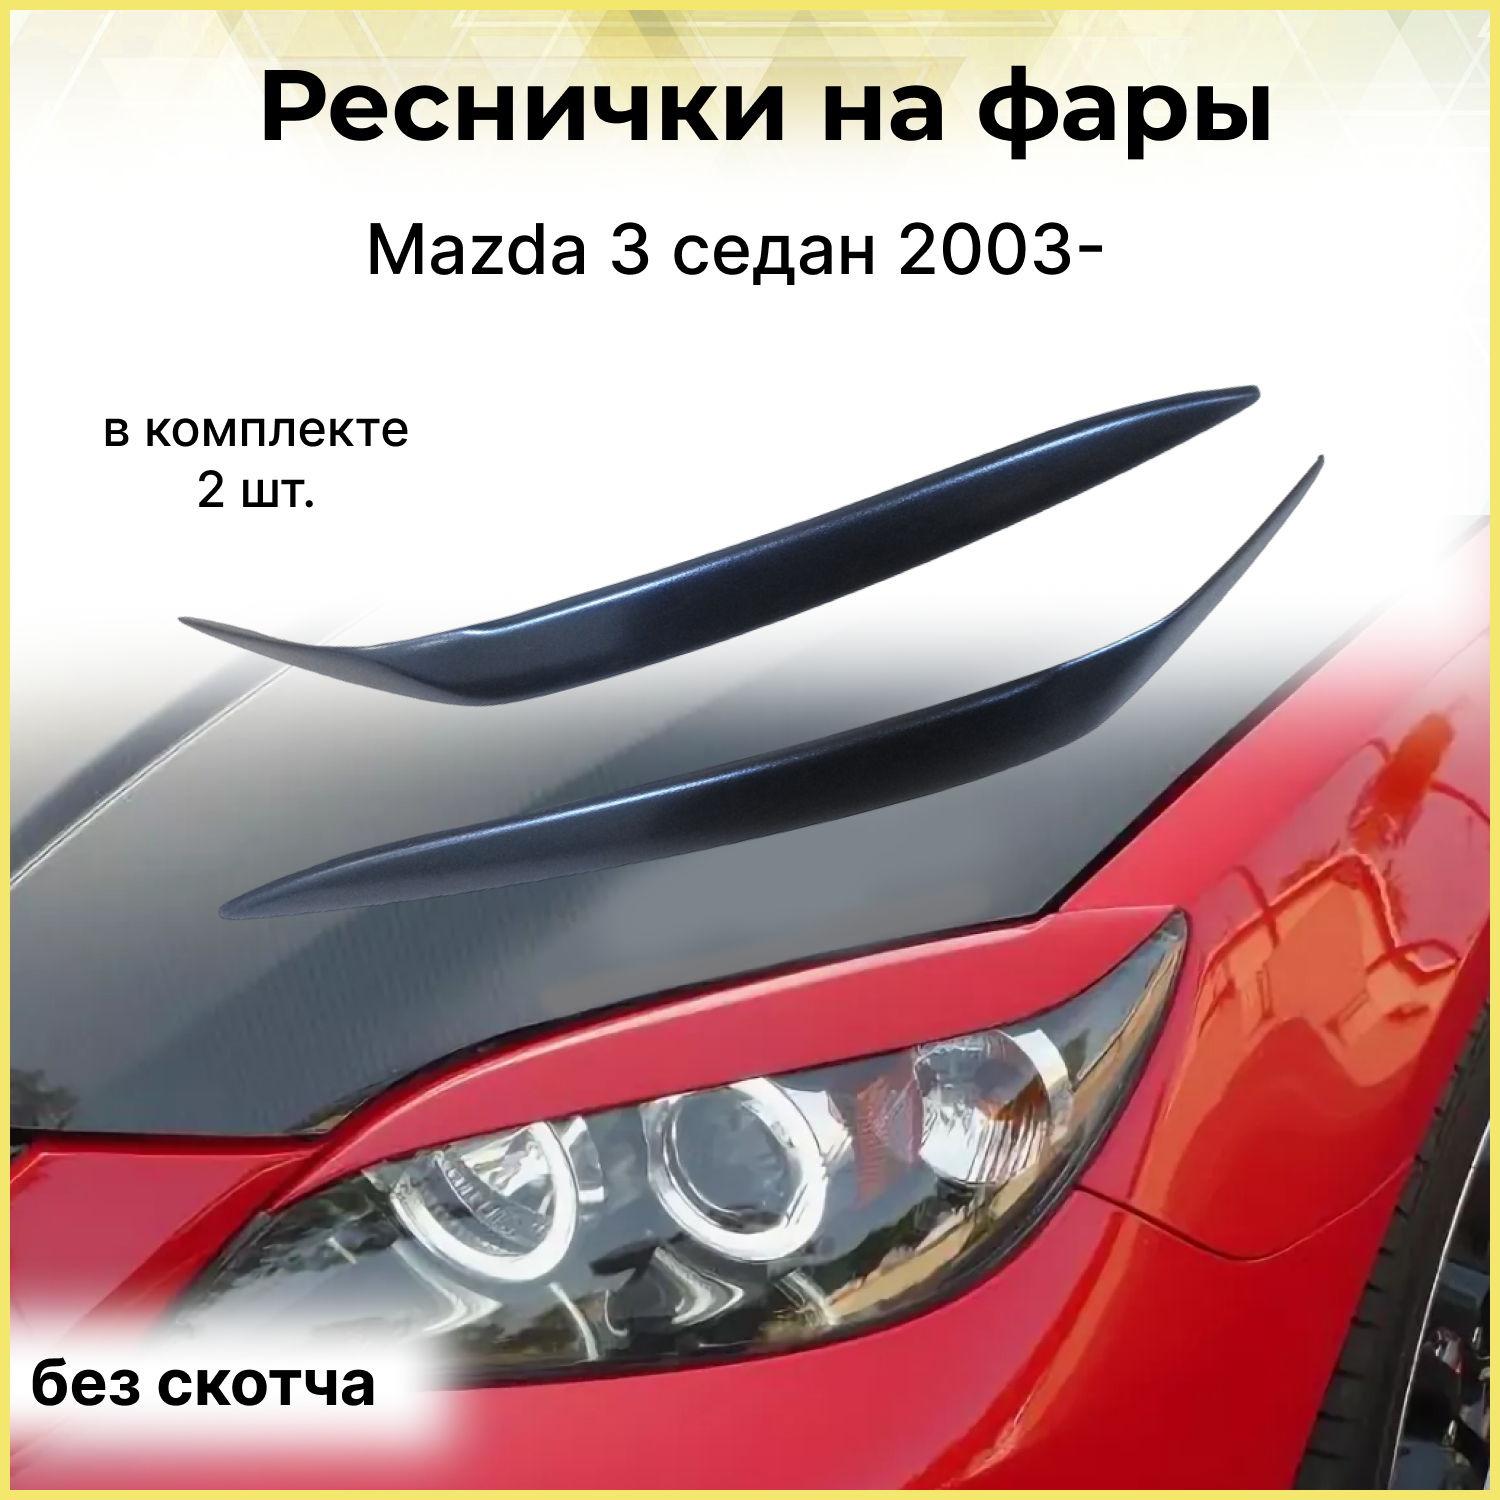 Реснички на фары для Mazda 3 седан 2003-